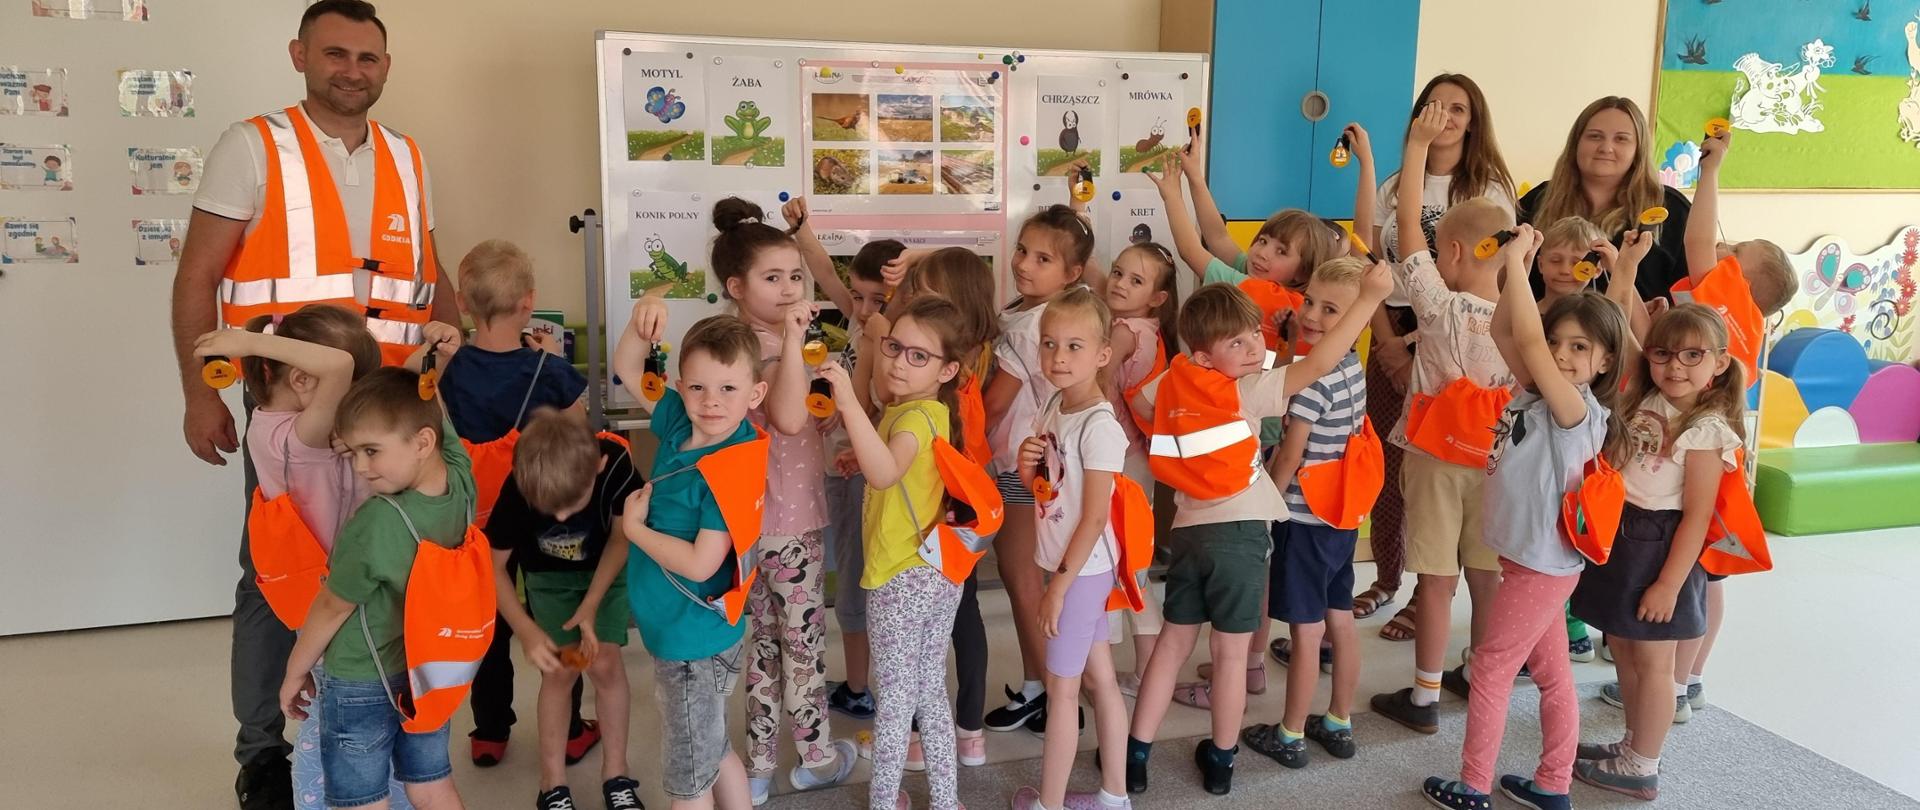 Lekcja bezpieczeństwa - grupa dzieci z odblaskowymi pomarańczowymi plecakami 